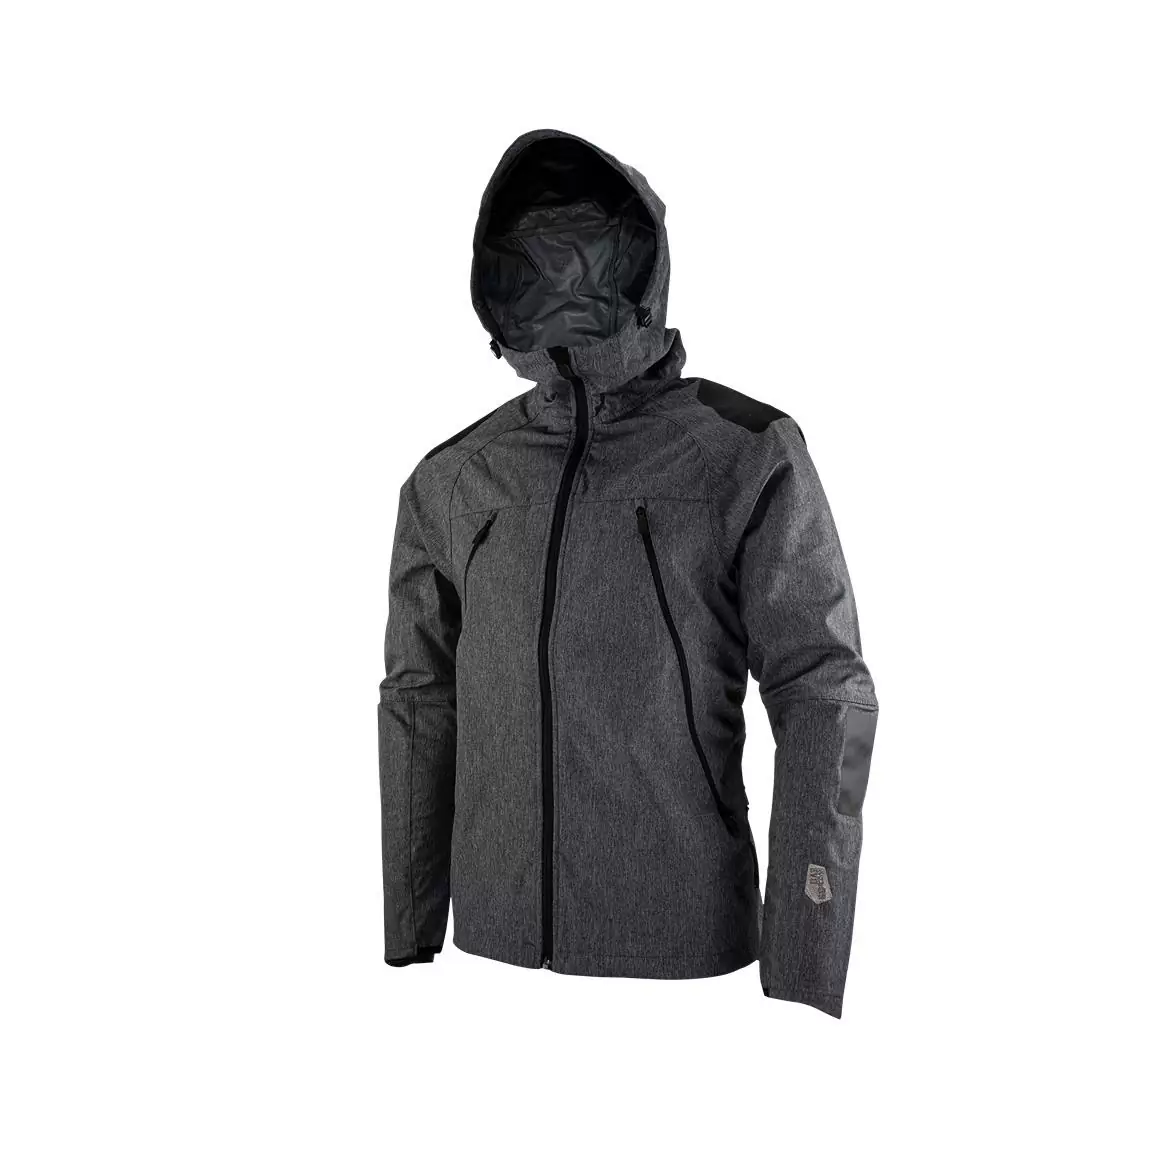 Mtb Hydradri 4.0 waterproof jacket Black size XL #2